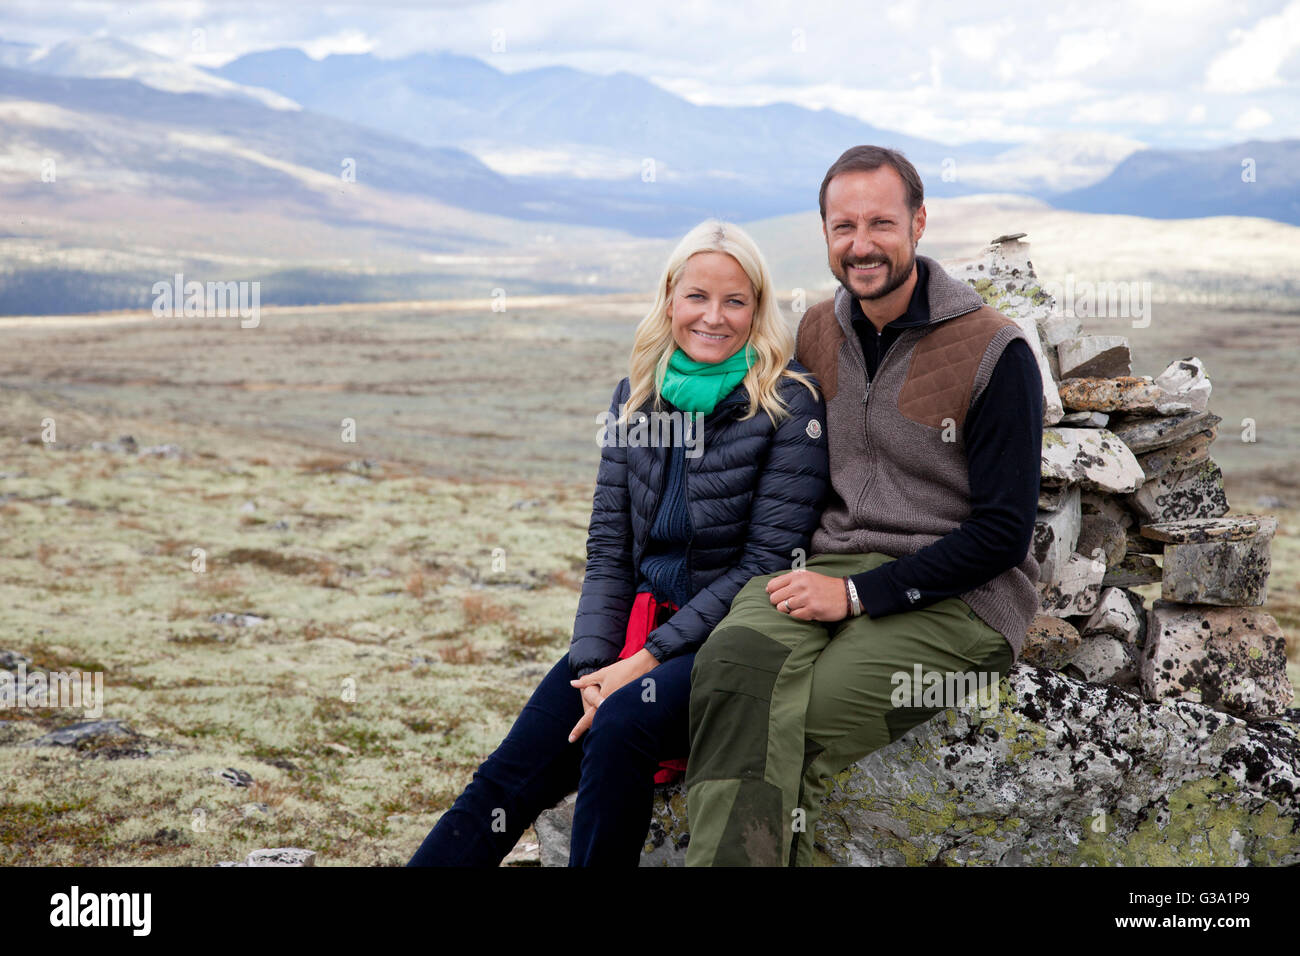 El príncipe heredero Haakon y la princesa heredera Mette-Marit de Noruega, durante una visita al condado de Hedmark en Noruega Foto de stock